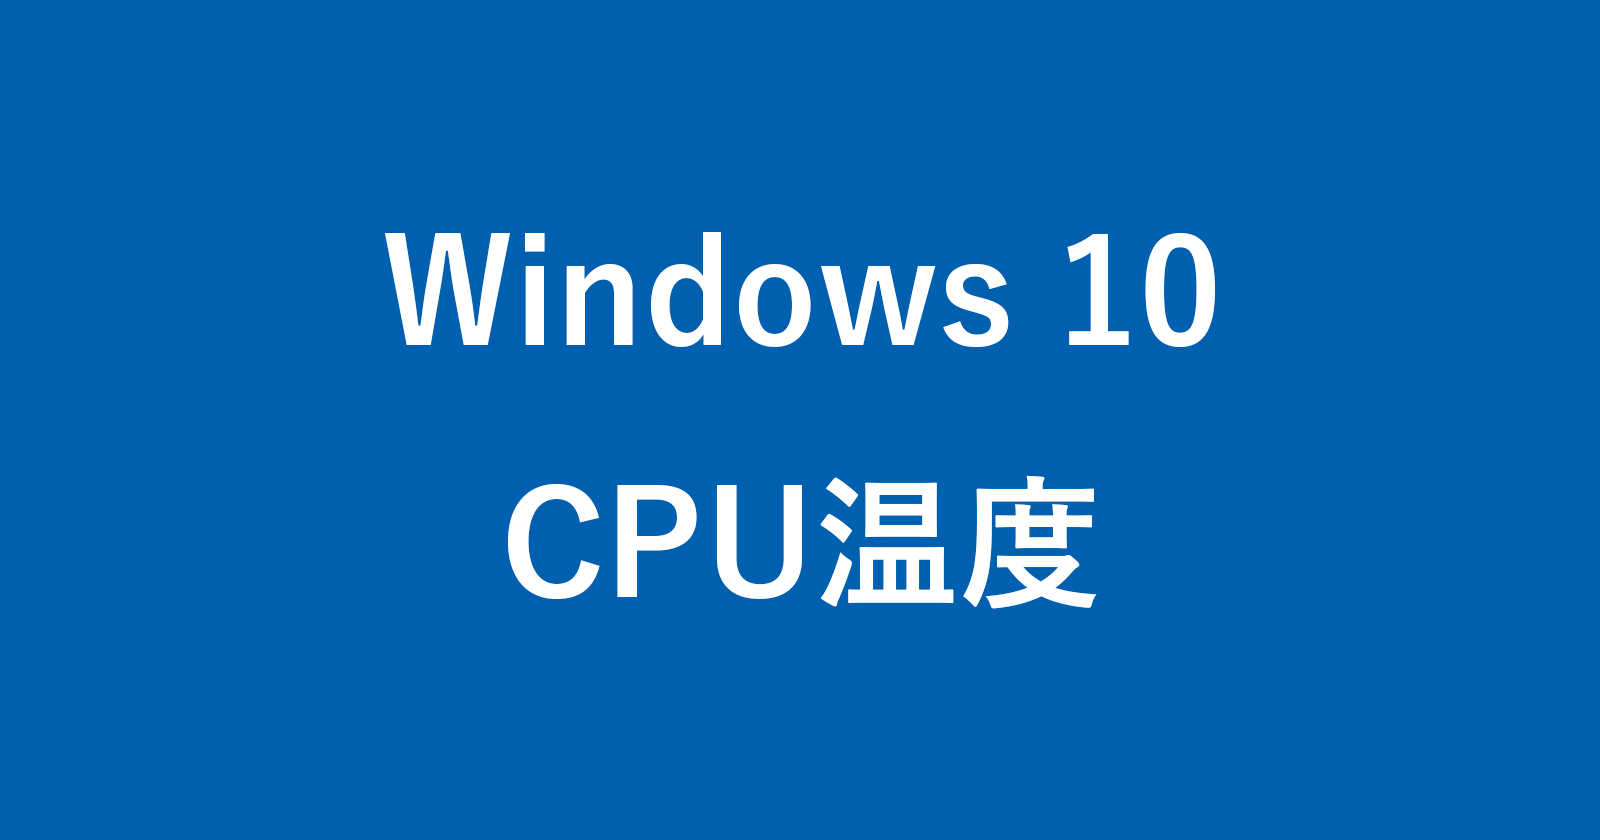 windows 10 cpu temperature